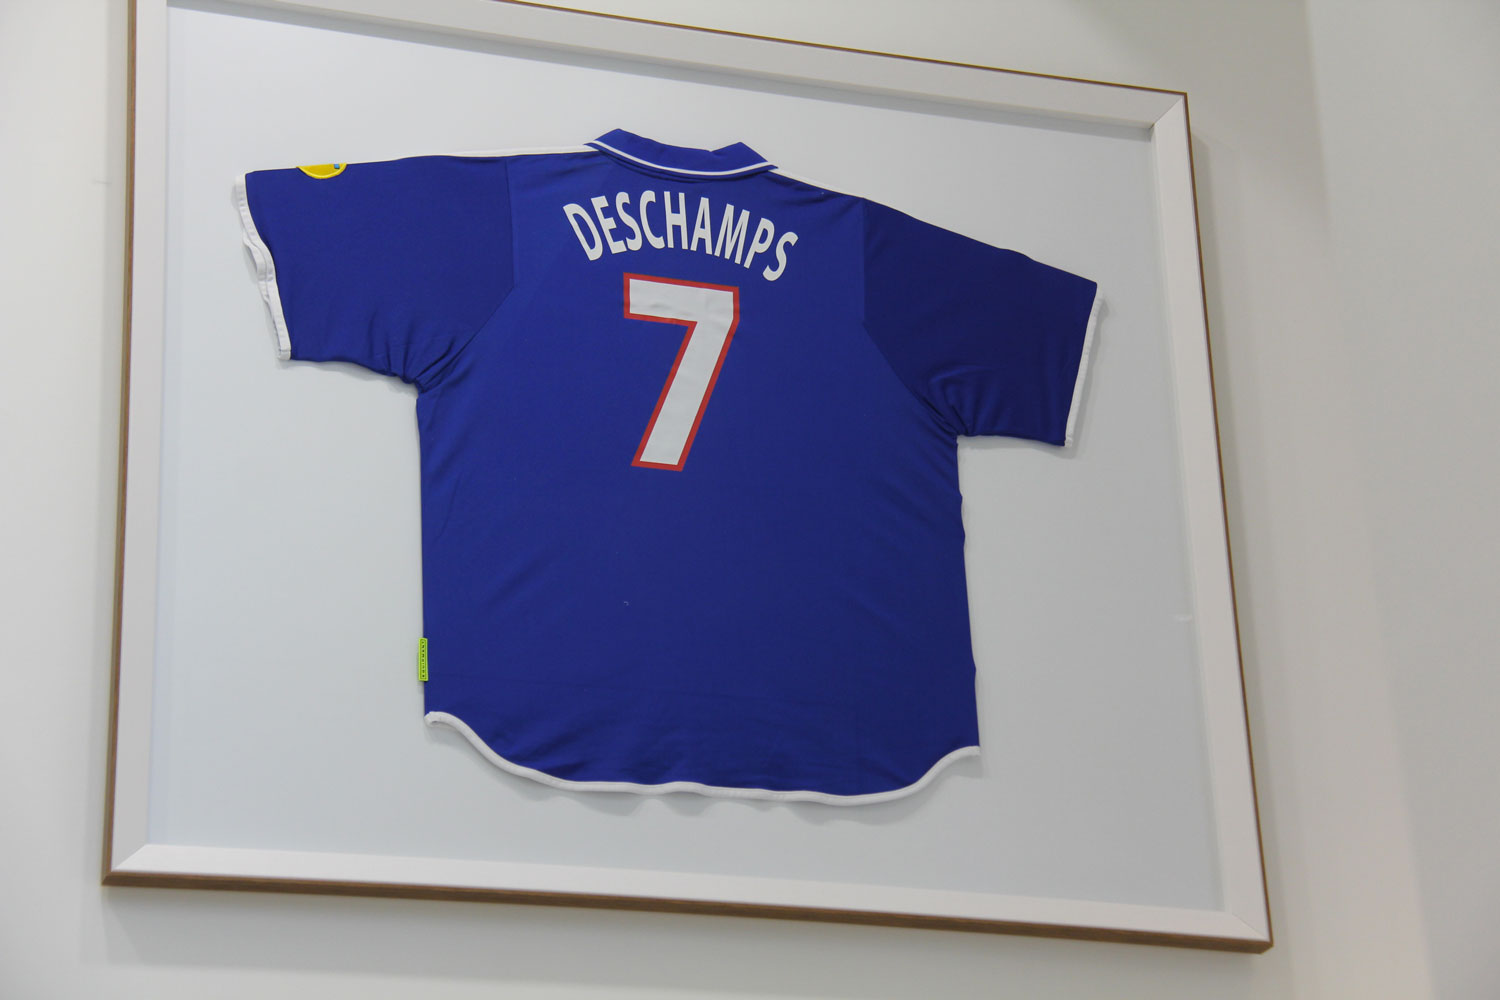 Dans le hall de la FFF il y aussi les maillots de joueurs célèbres, car Didier DESCHAMPS, avant d’être entraineur, a joué en équipe de France, notamment en 1998 il a contribué à la victoire de la France lors de la coupe du monde © Globe Reporters